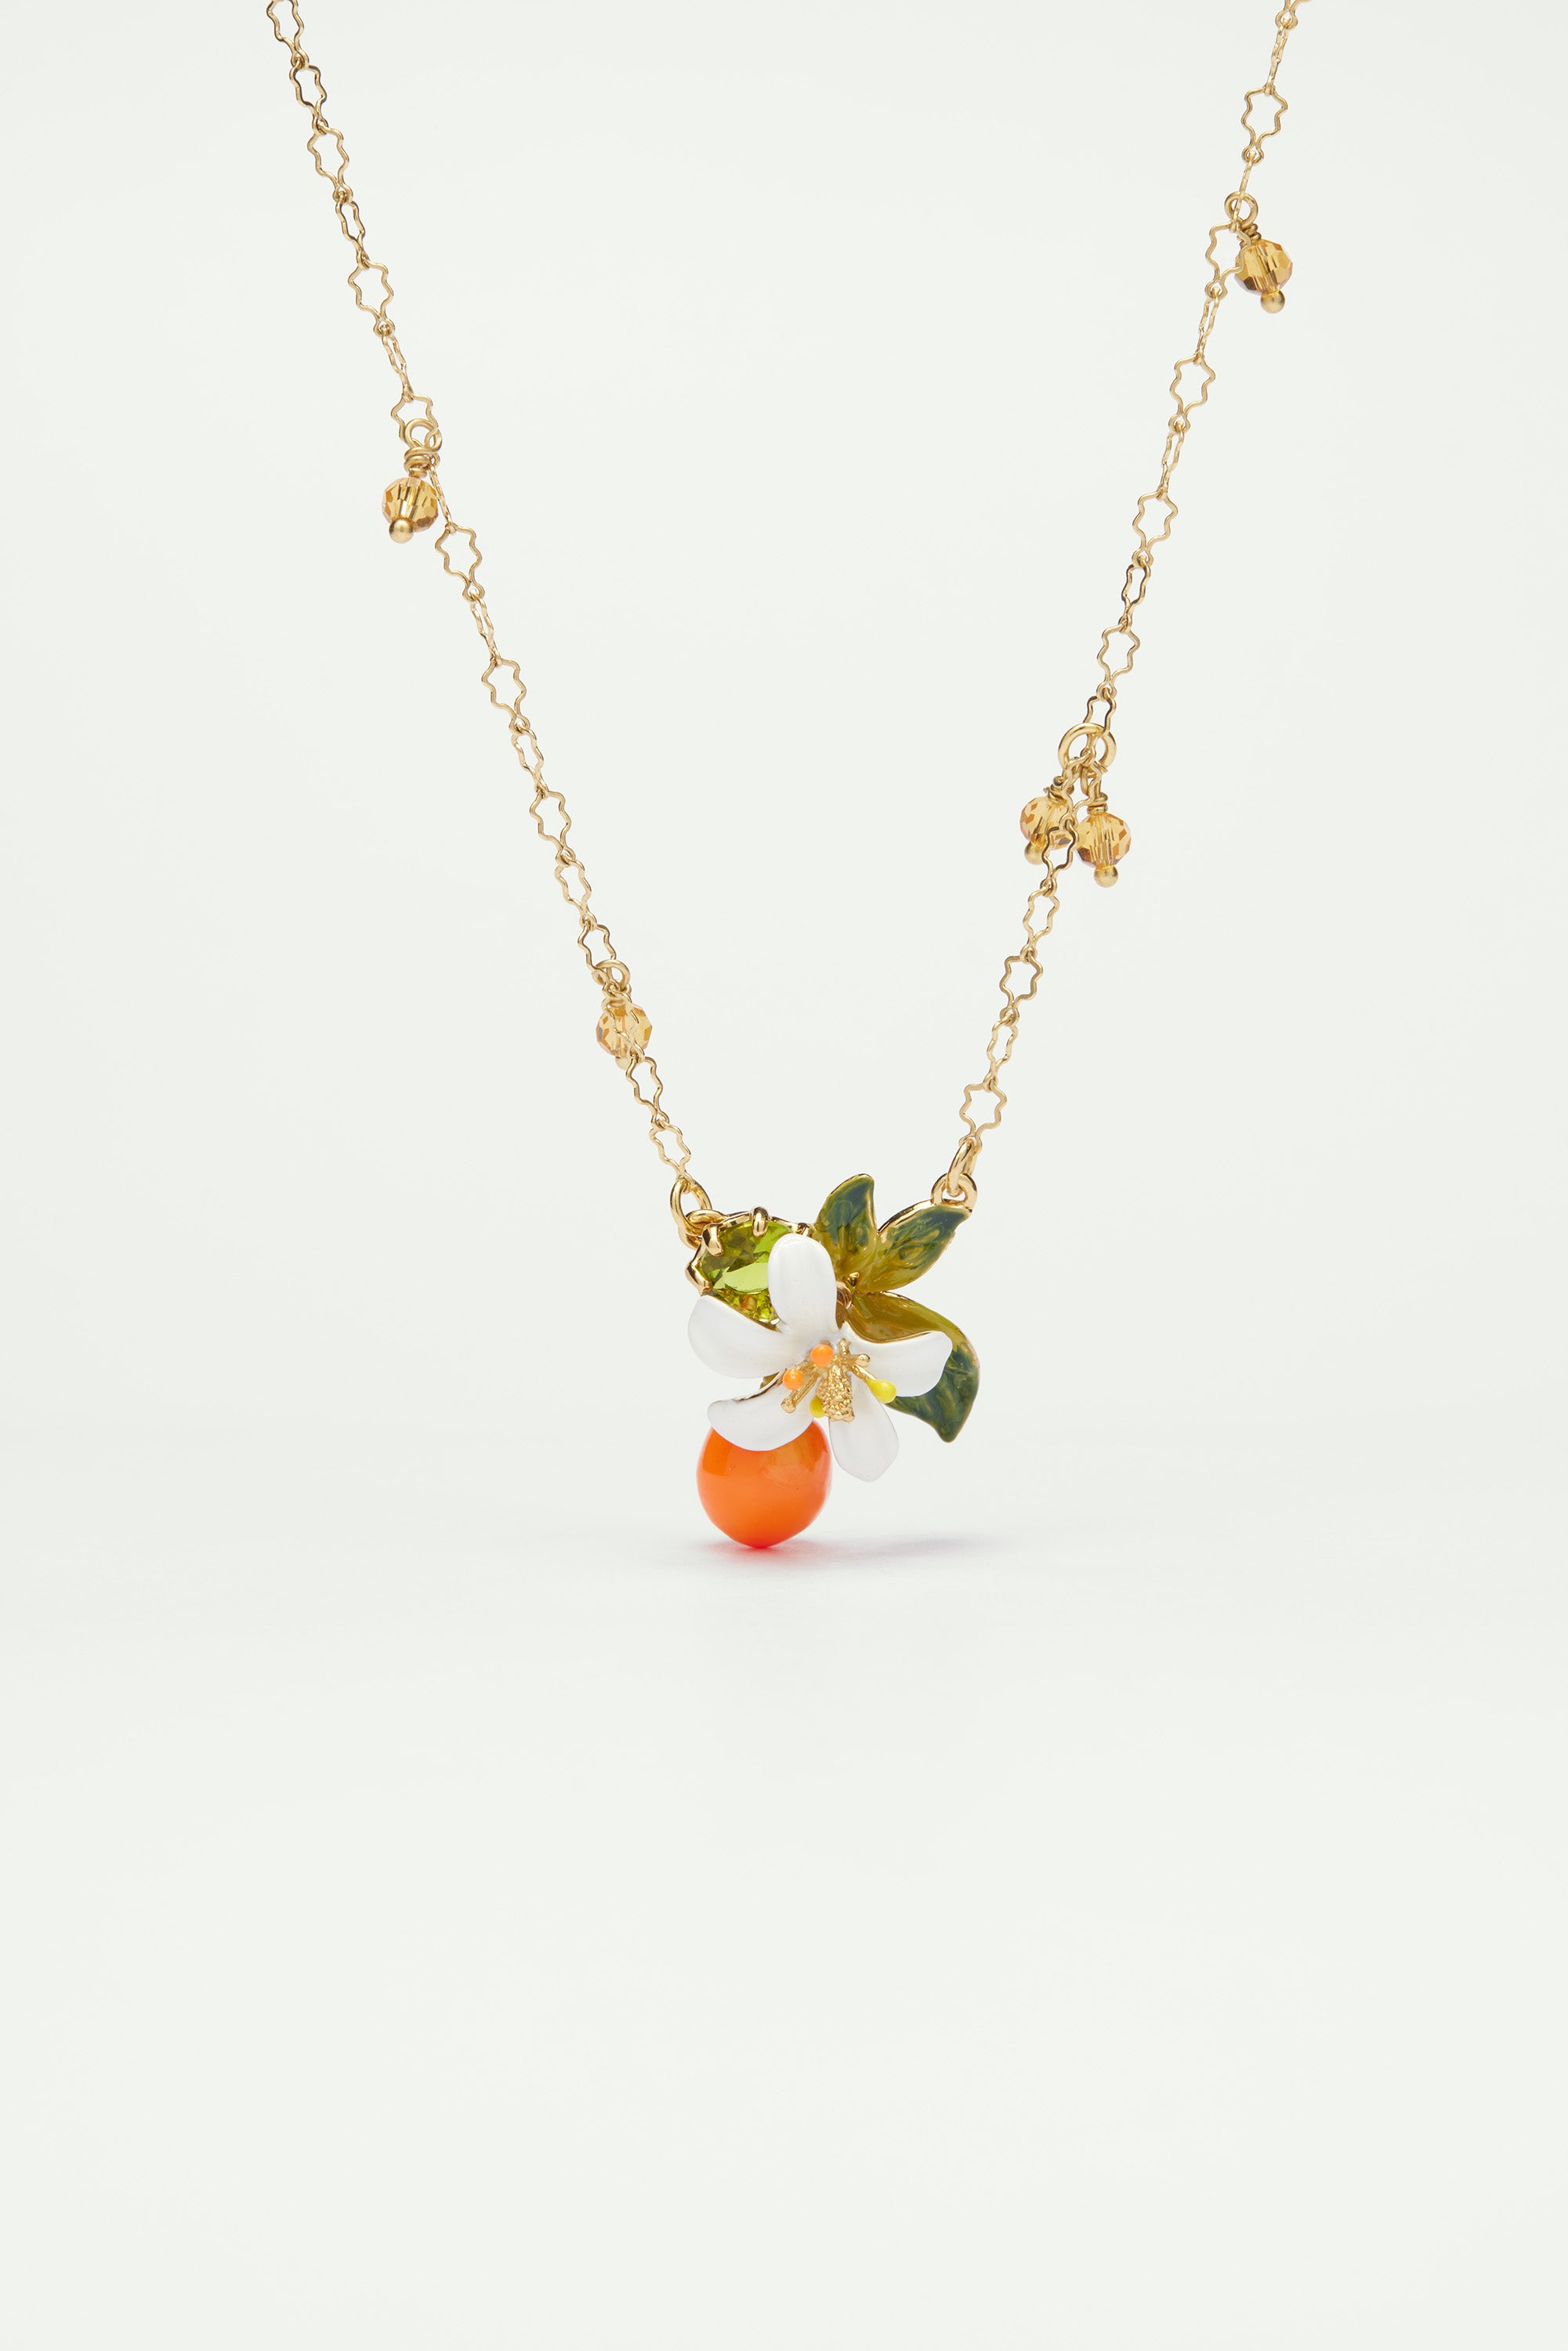 Collier pendentif orange, fleur d'oranger et petites perles